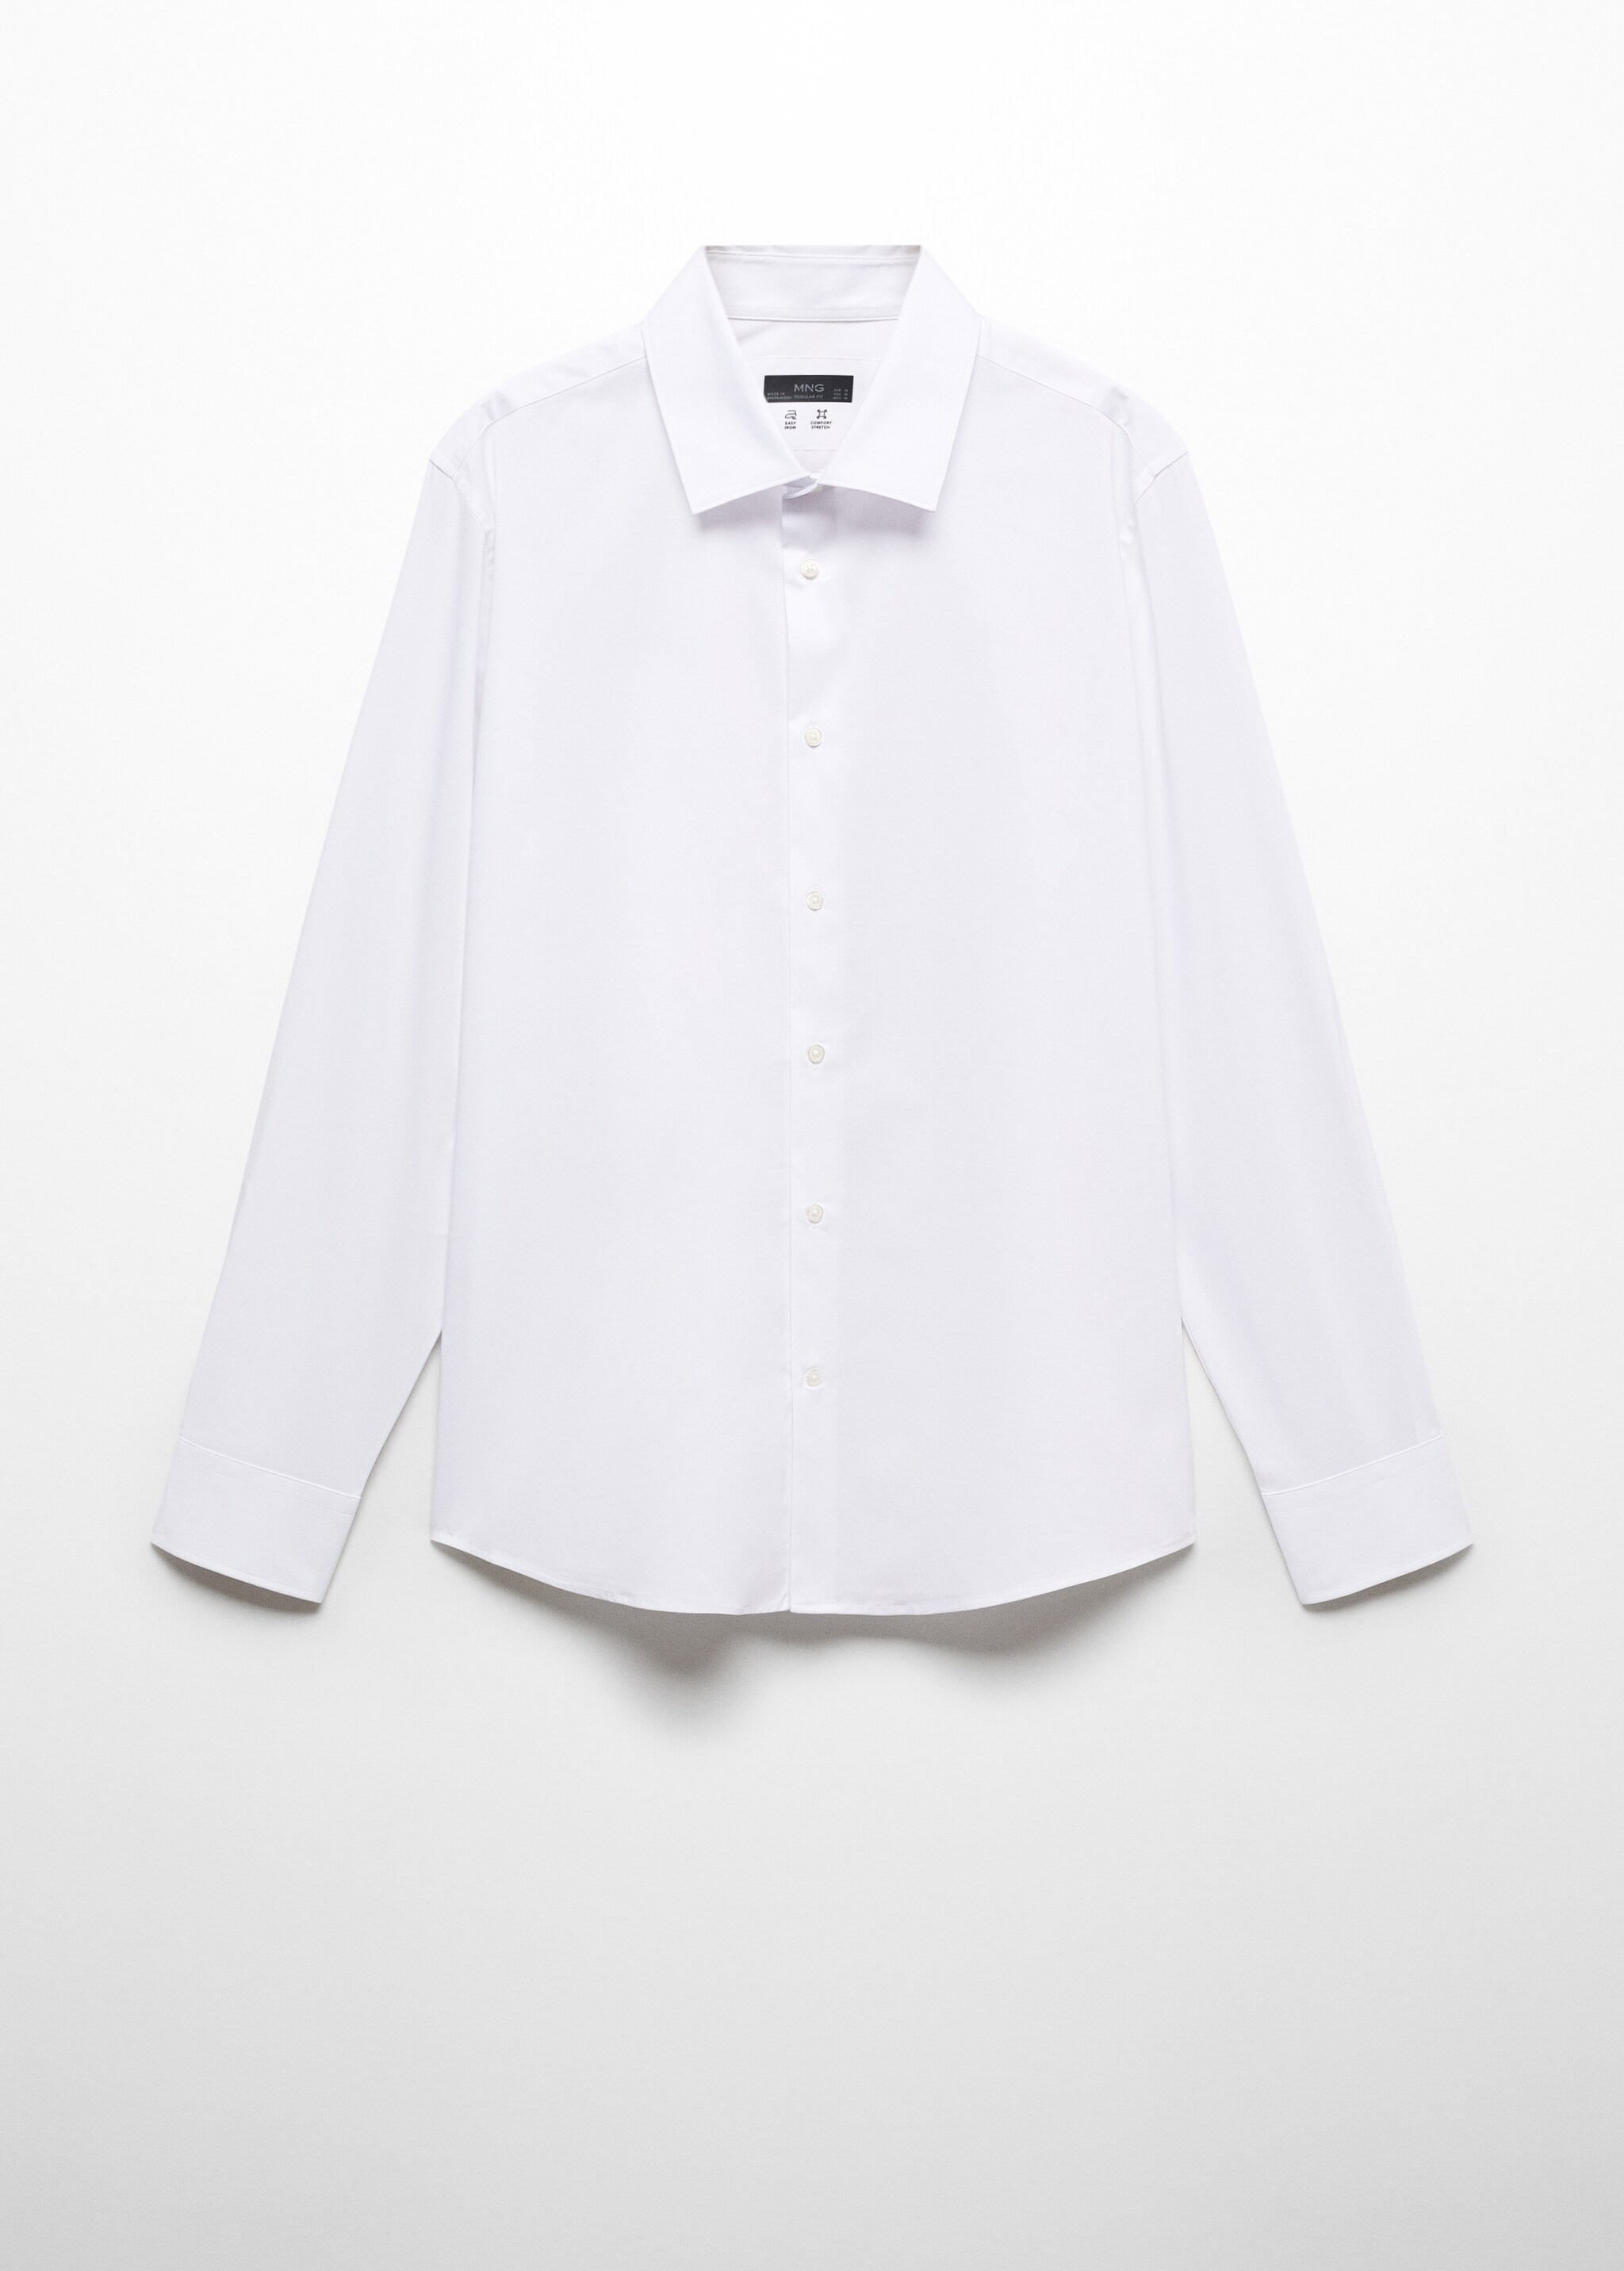 Camisa de algodão stretch regular fit - Artigo sem modelo